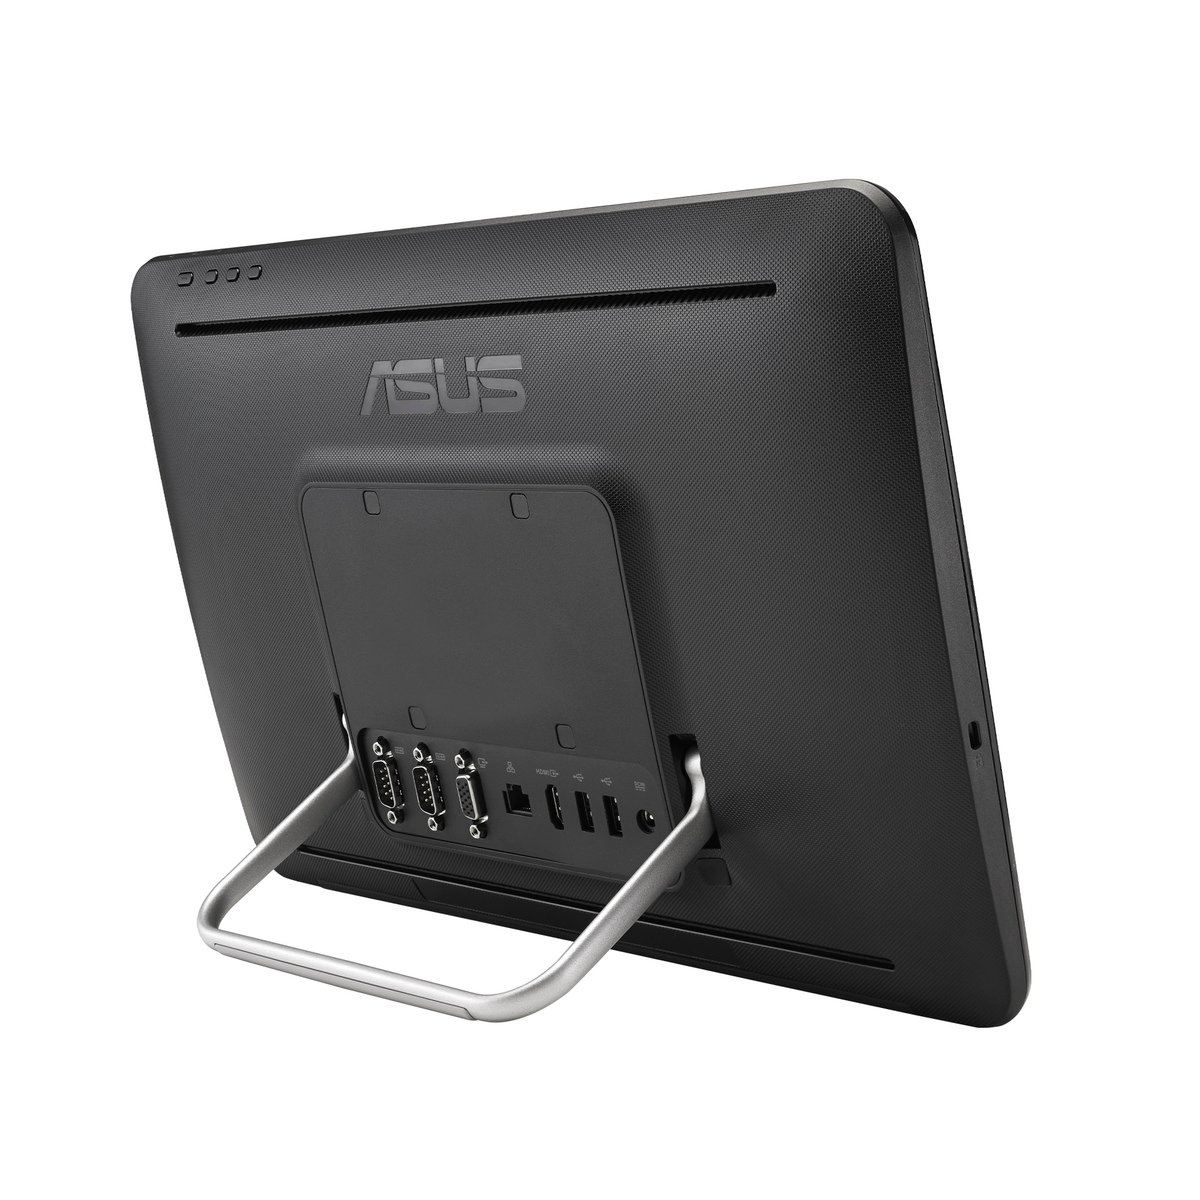 Asus A41GART-BD014R All-in-One Desktop,Celeron 1.1GHz,4GB RAM, 500GB HDD,Windows 10, 15.6inch HD Screen, Black